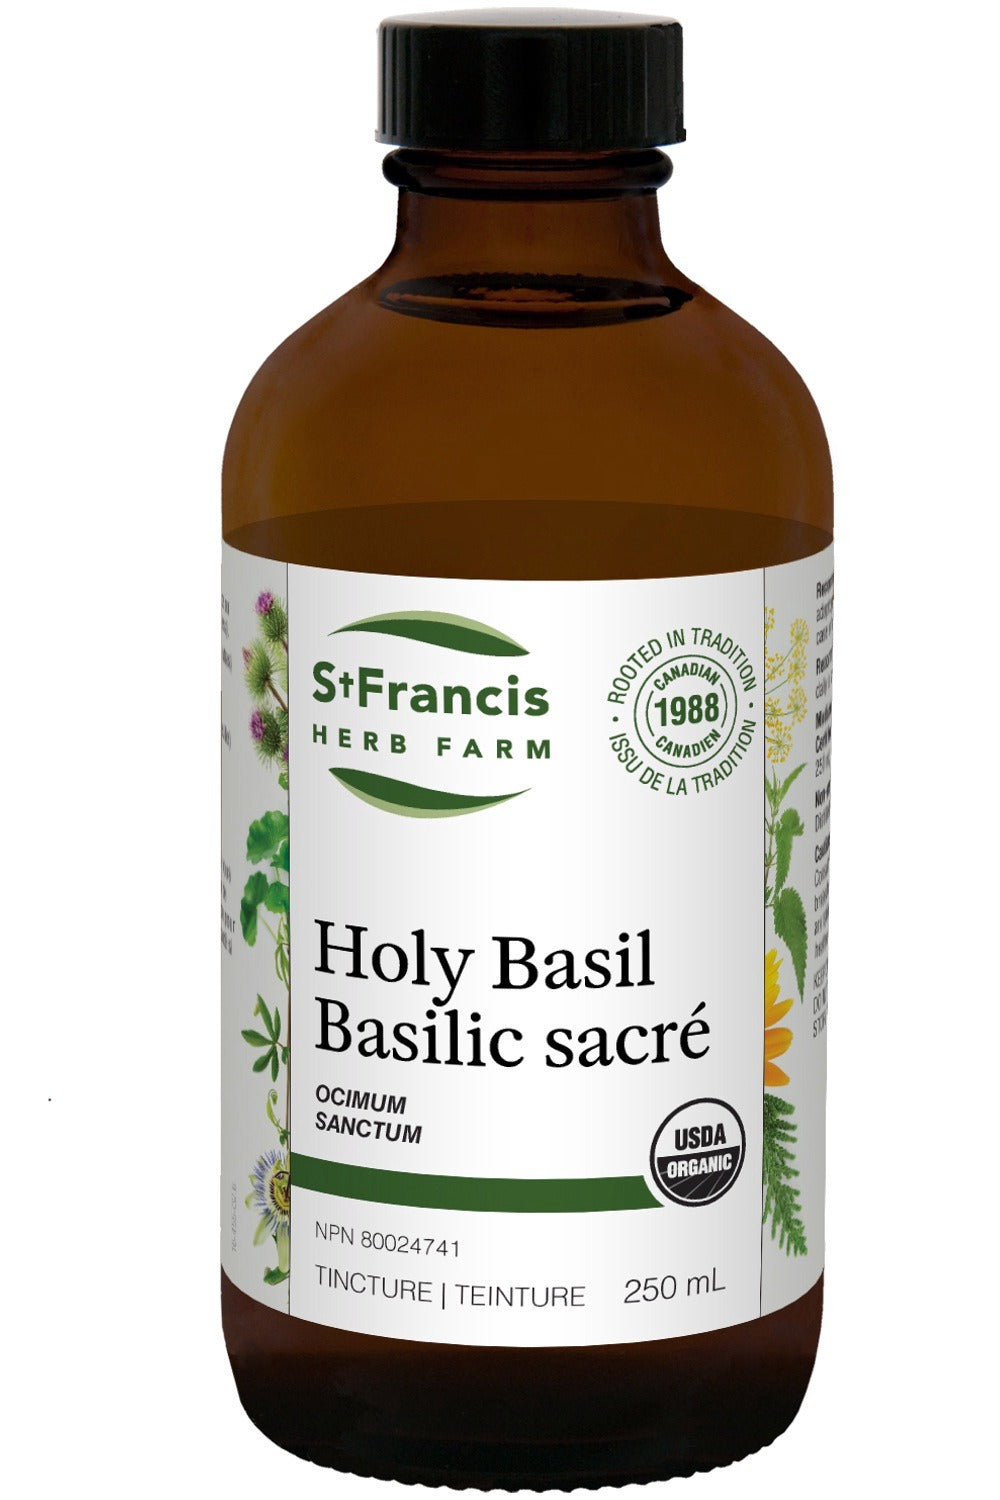 ST FRANCIS HERB FARM Holy Basil (250 ml)